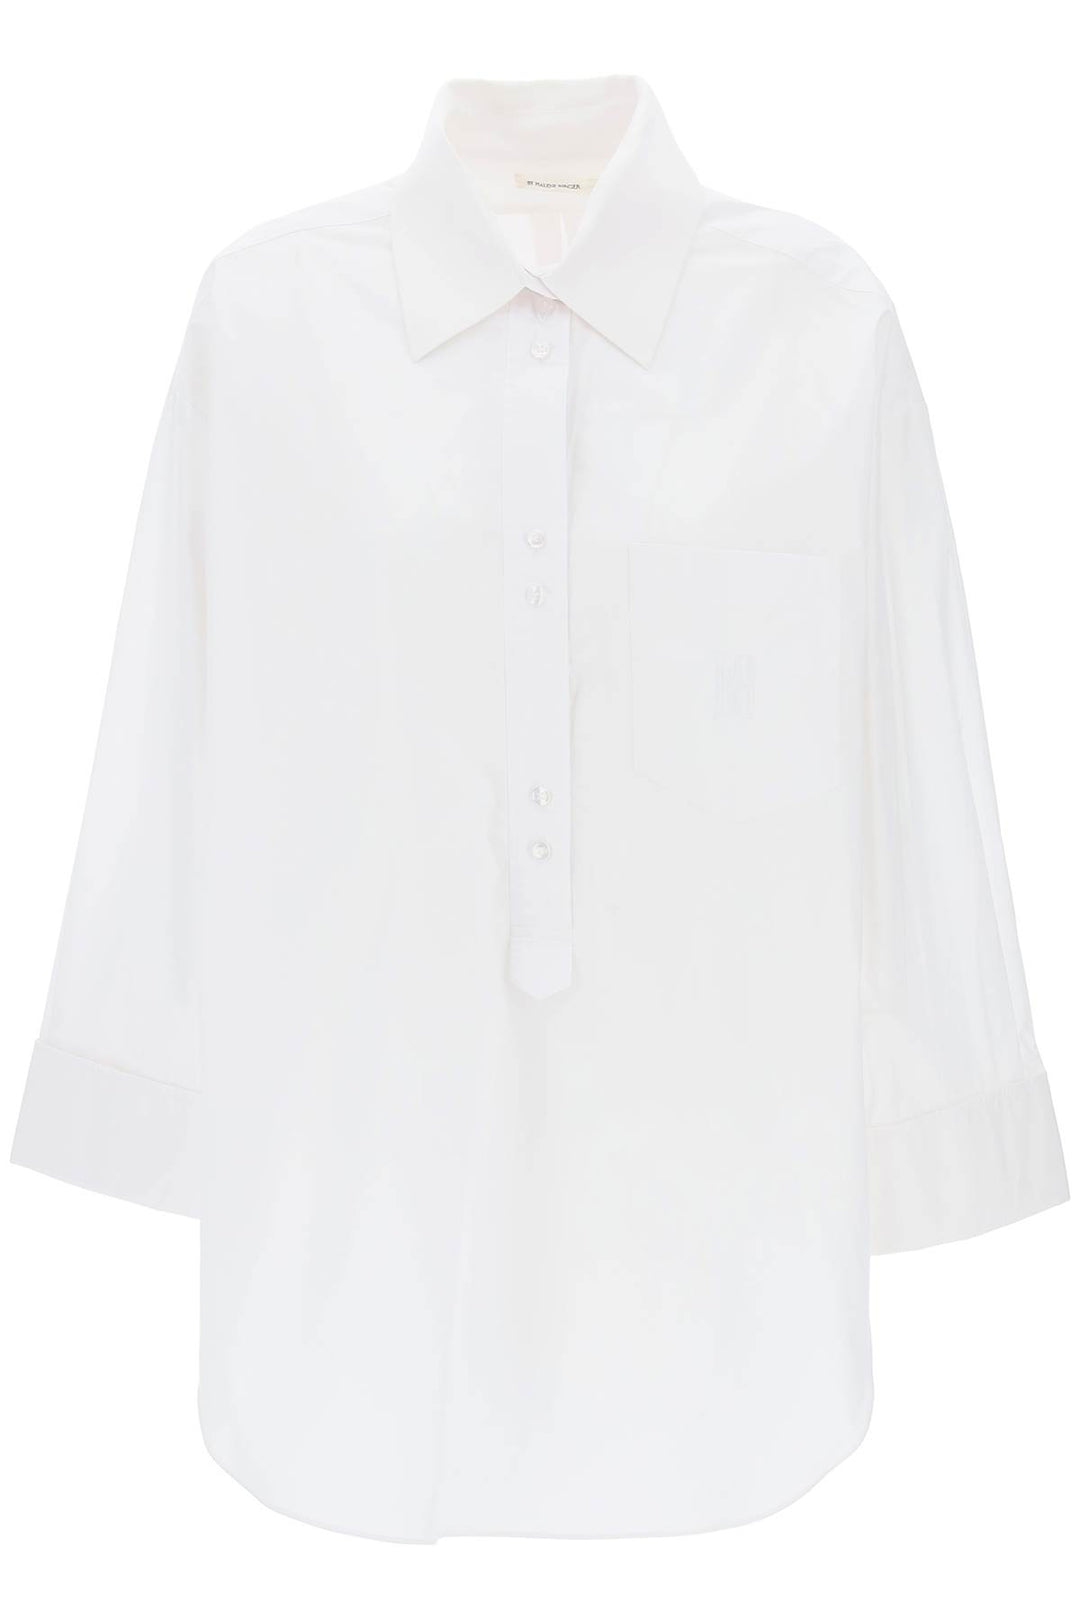 By Malene Birger Maye Tunic Style Shirt   Bianco